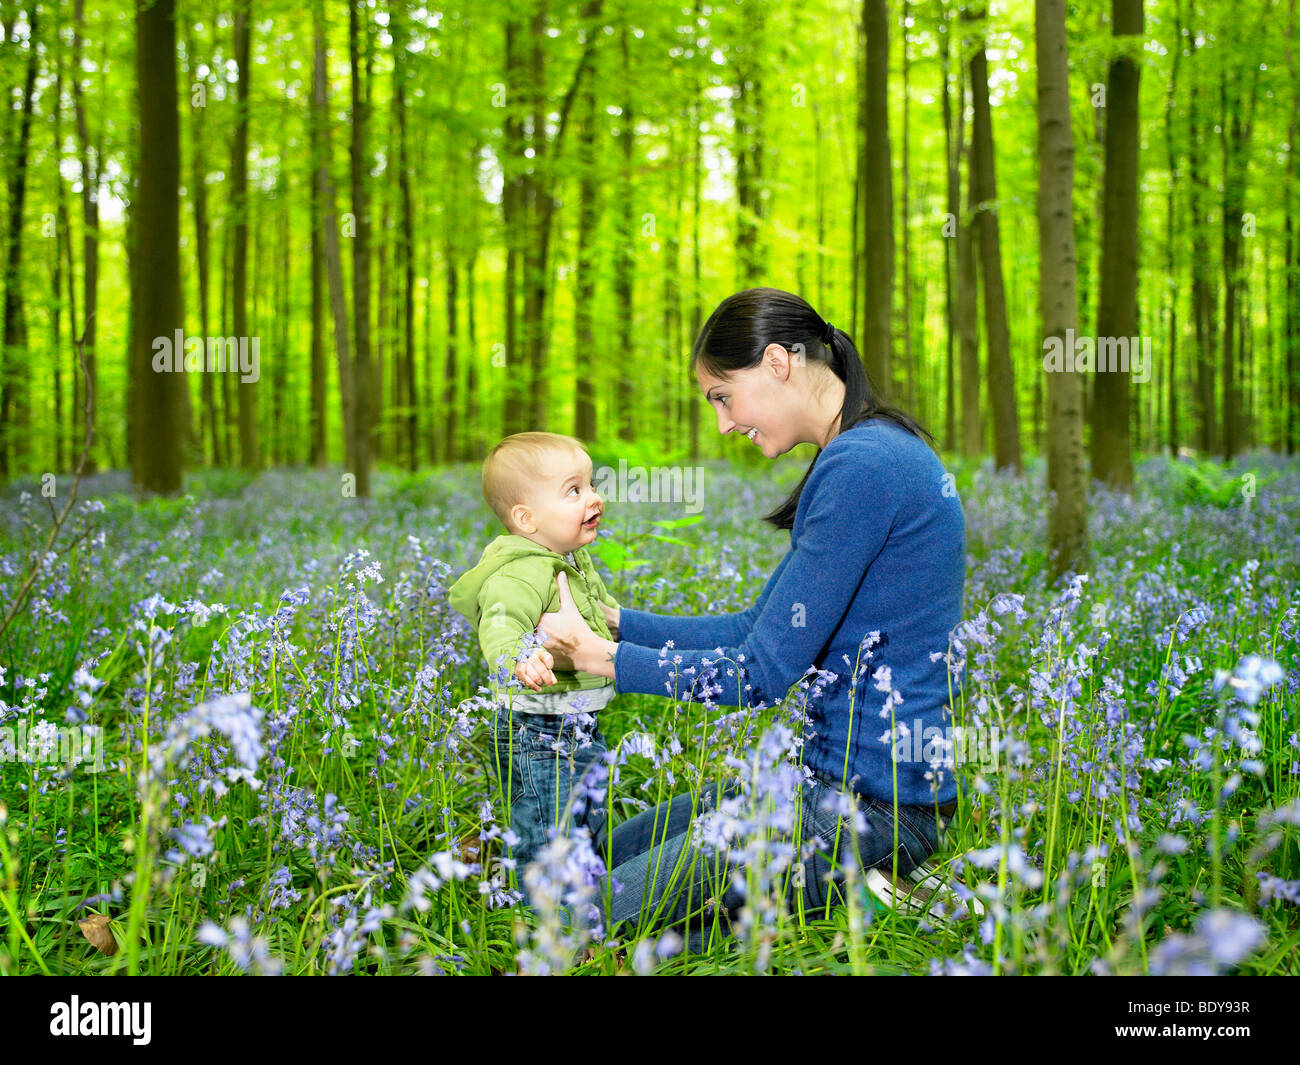 La mère et le fils dans les bois Banque D'Images